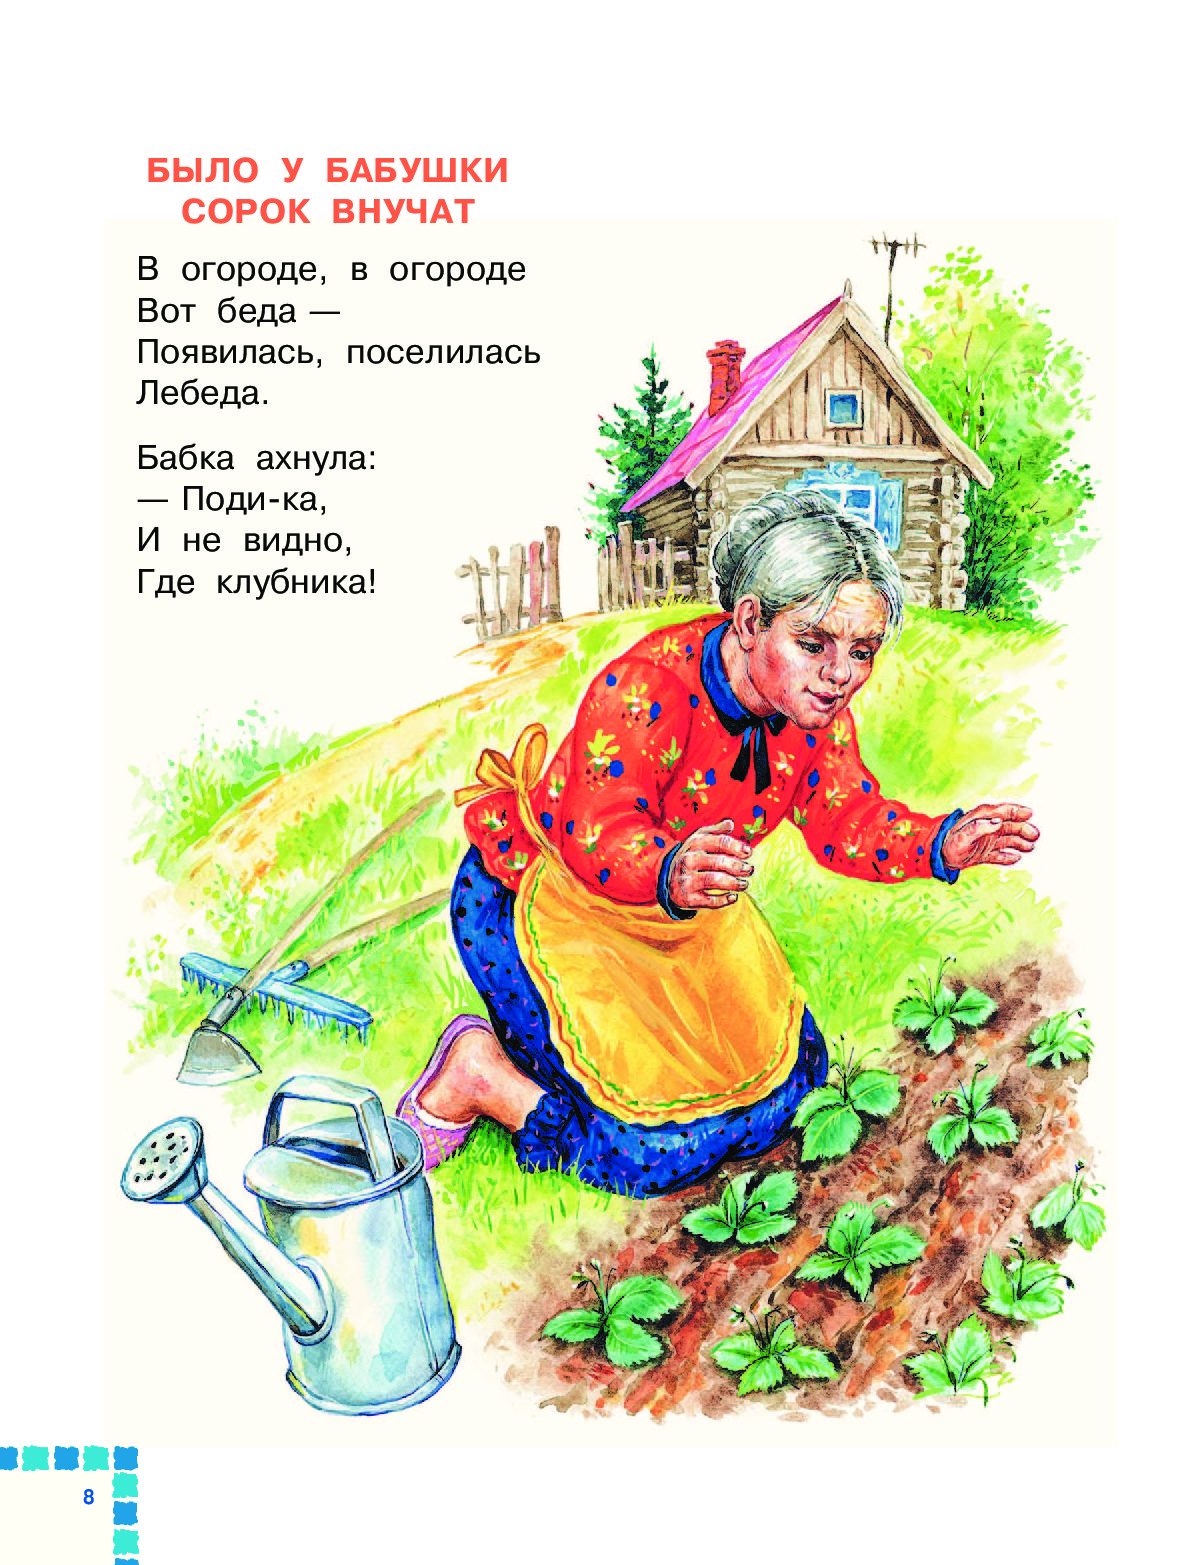 Детские стихи про огород